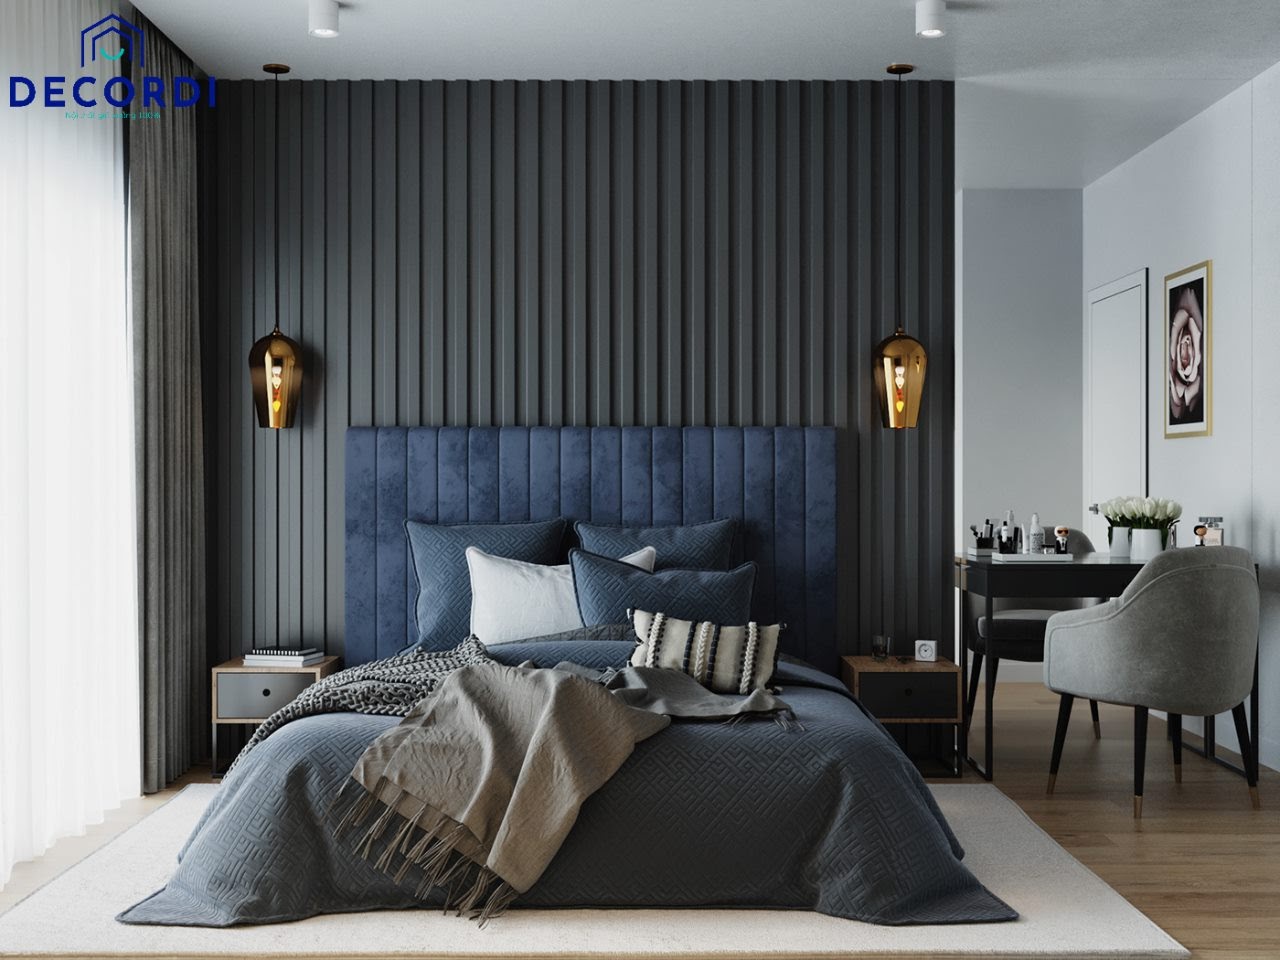 Nội thất phòng ngủ hiện đại cho vợ chồng với gam màu xanh đen hiện đại